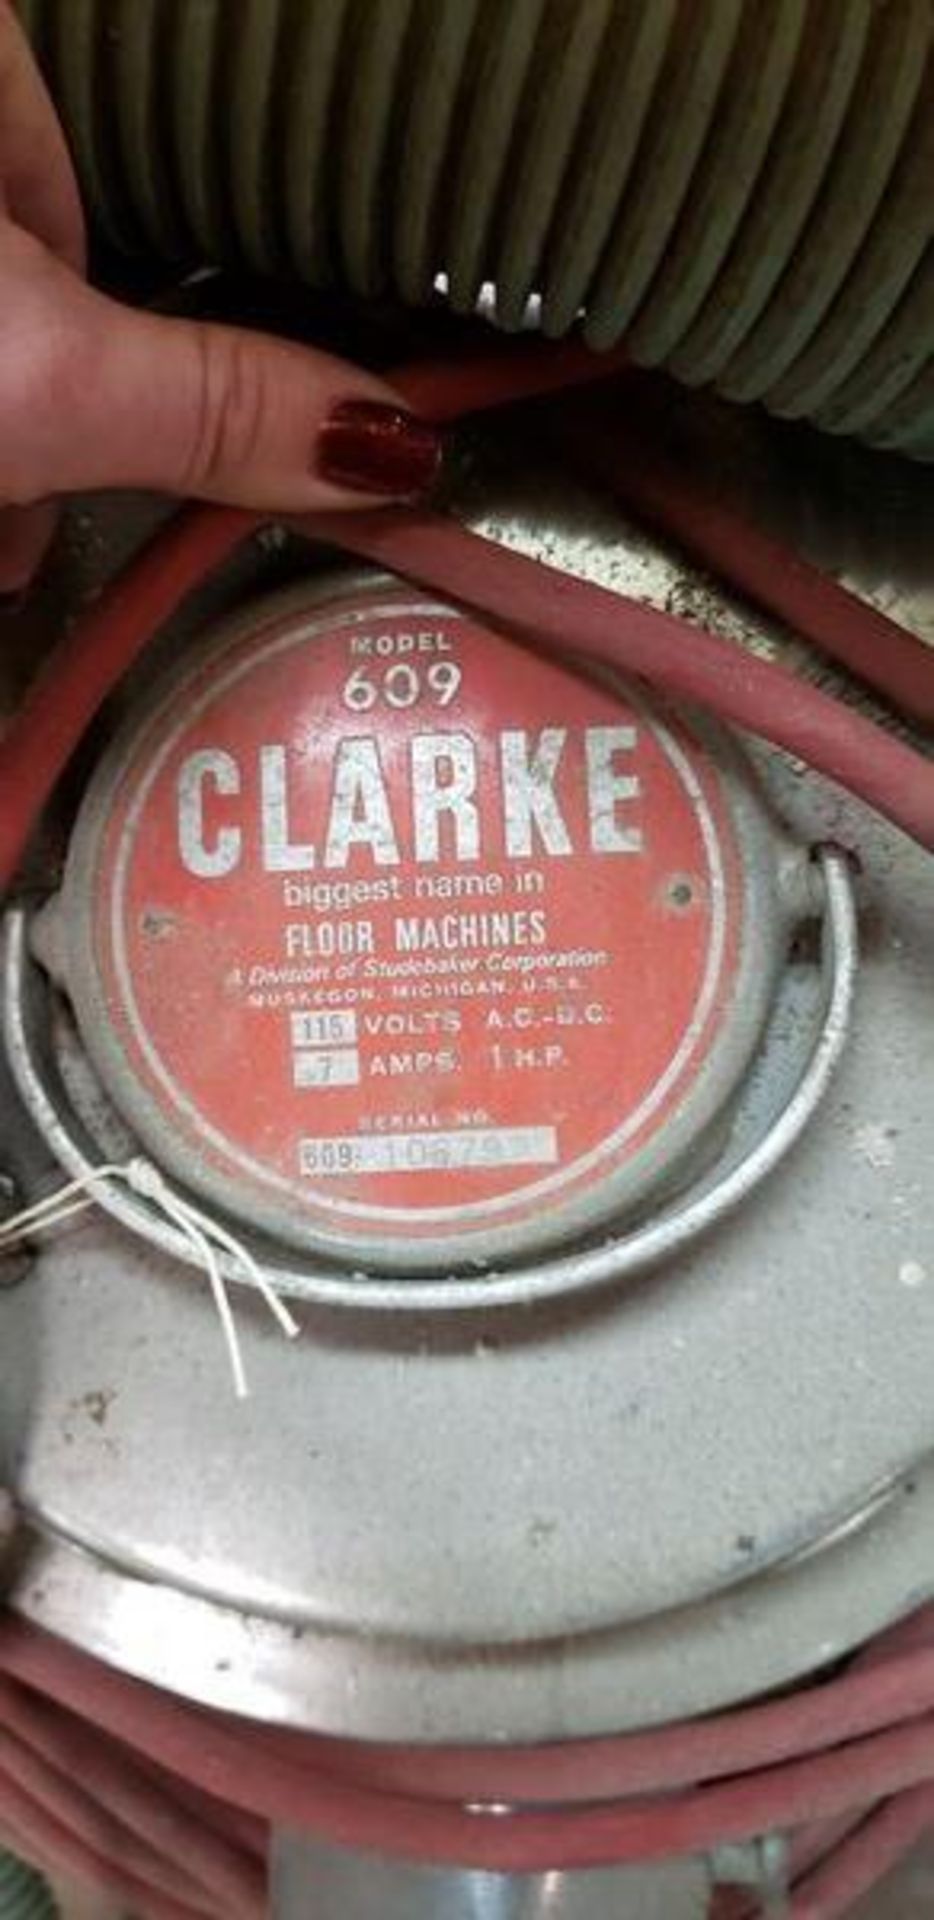 CLARKE 609 FLOOR MACHINE - Image 2 of 2